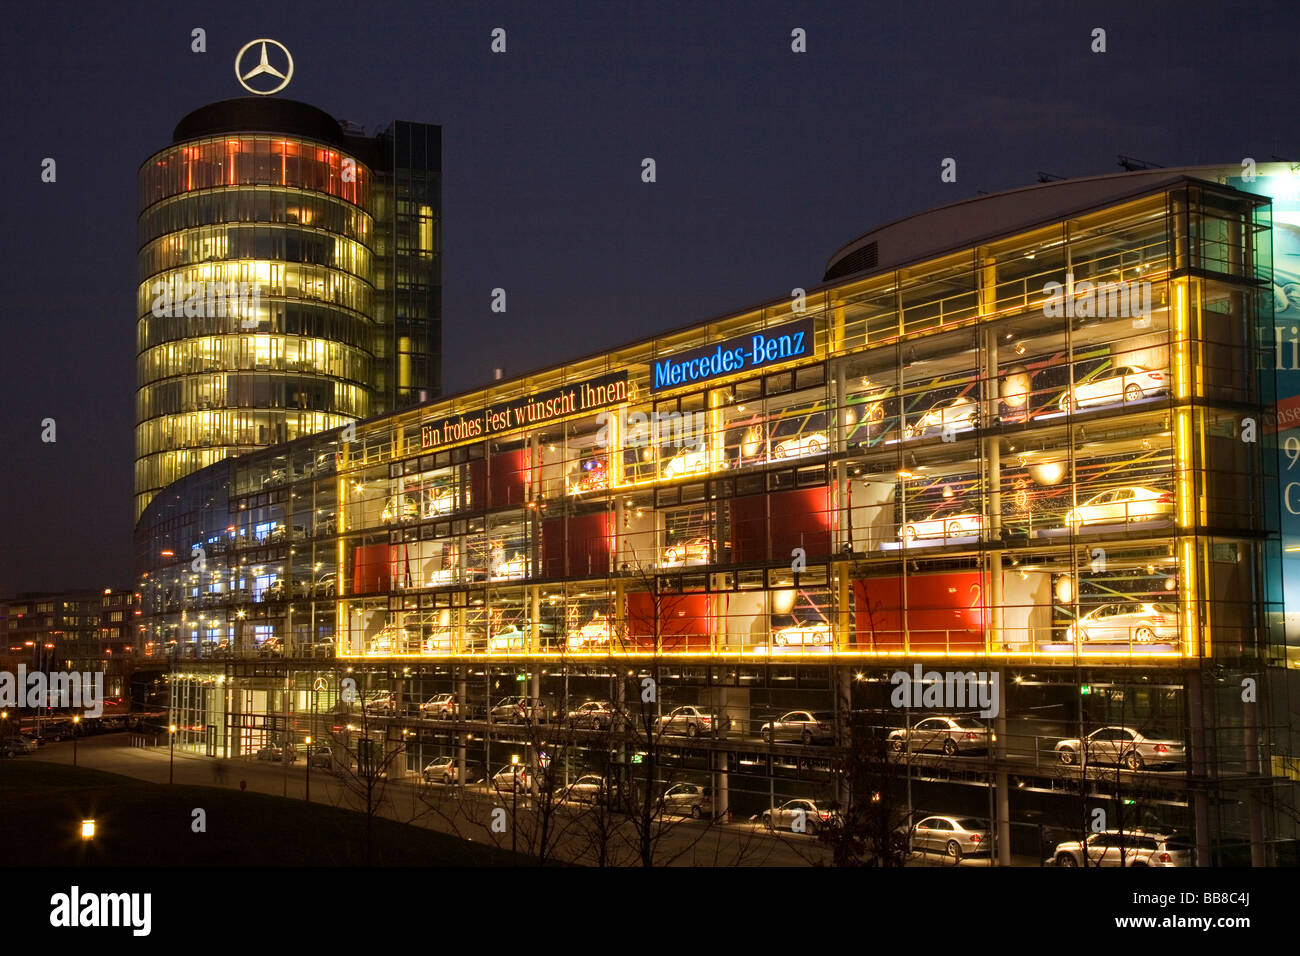 Autohaus dekoriert wie ein Adventskalender für Weihnachten bei Nacht, München, Upper Bavaria, Bavaria, Germany, Europe Stockfoto